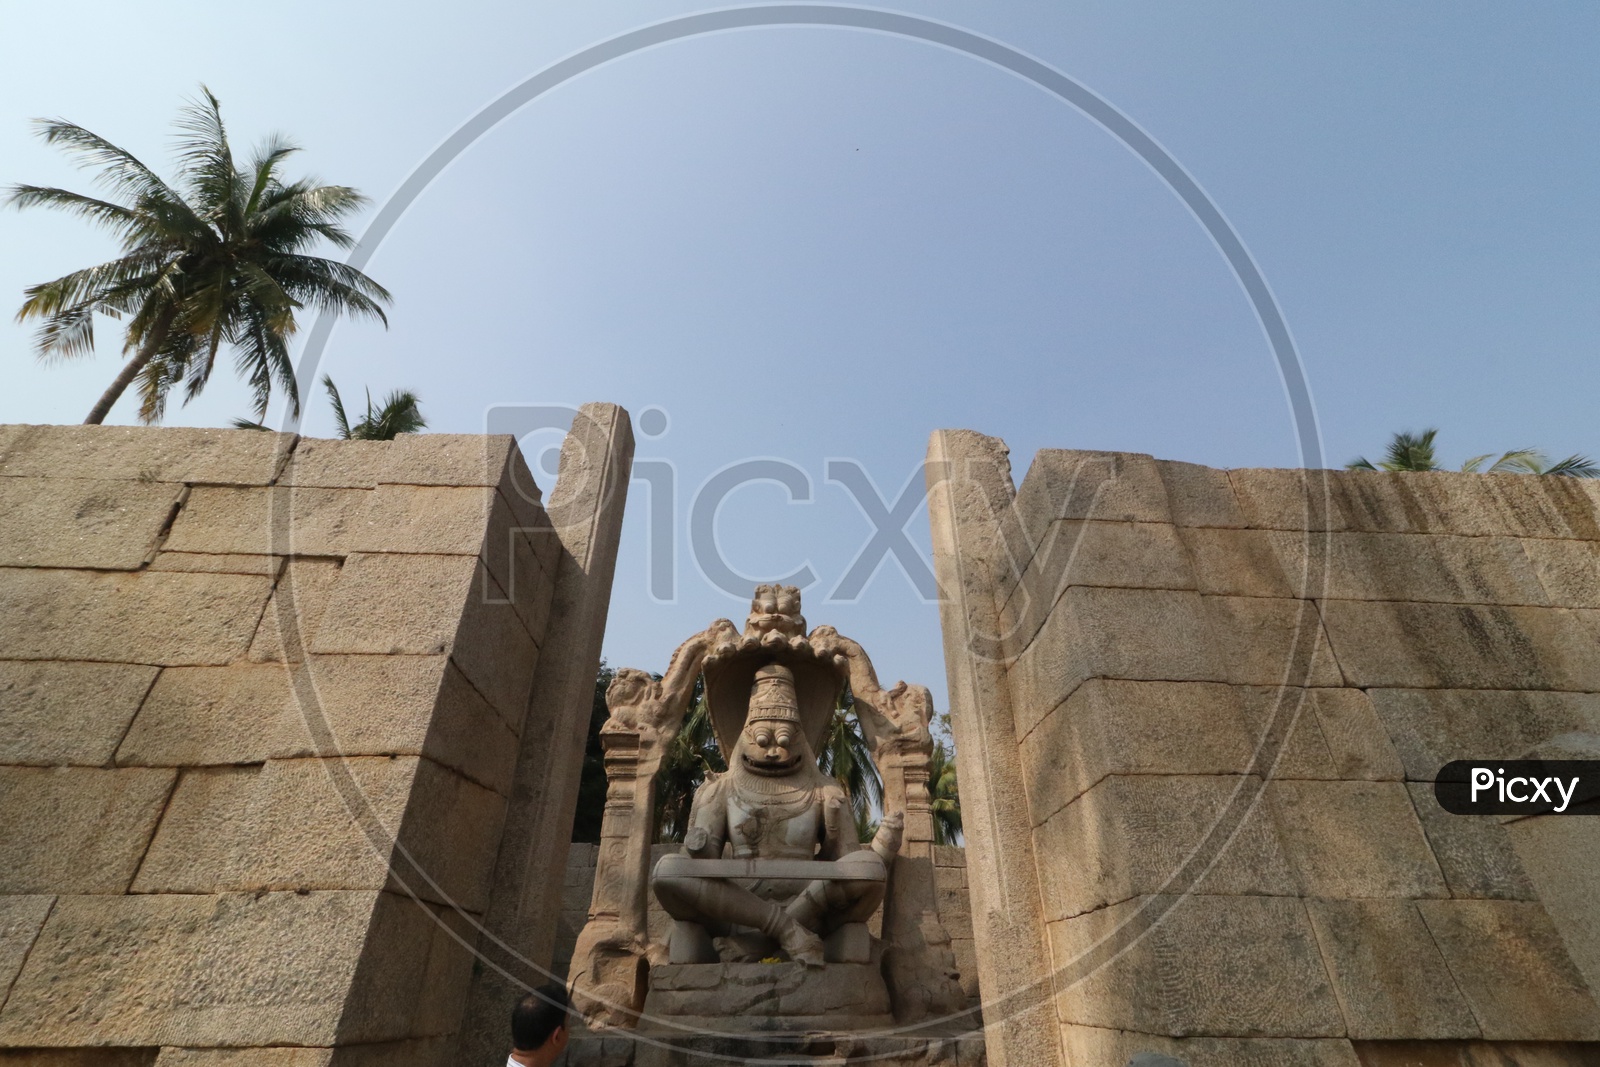 Stone sculpture Of Hindu God Lakshmi Narasimha swamy at Sri Lakshmi Narasimha Temple in Hampi , karnataka